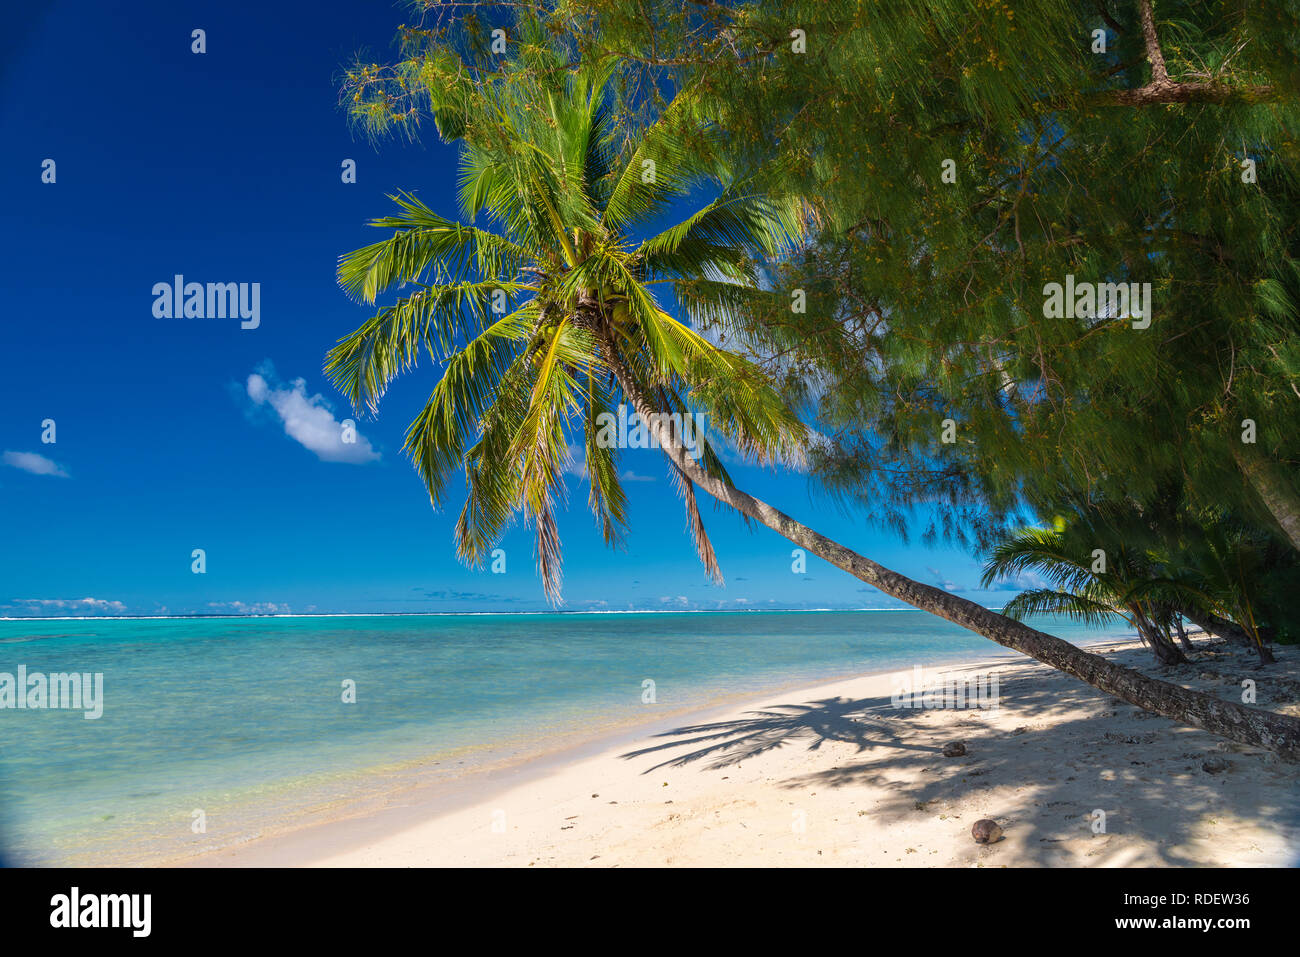 Schöner tropischer Strand mit Kokospalme überhängend ein idyllischer weißer Sandstrand auf der Insel Aitutaki, Cookinseln, Südpazifik Stockfoto